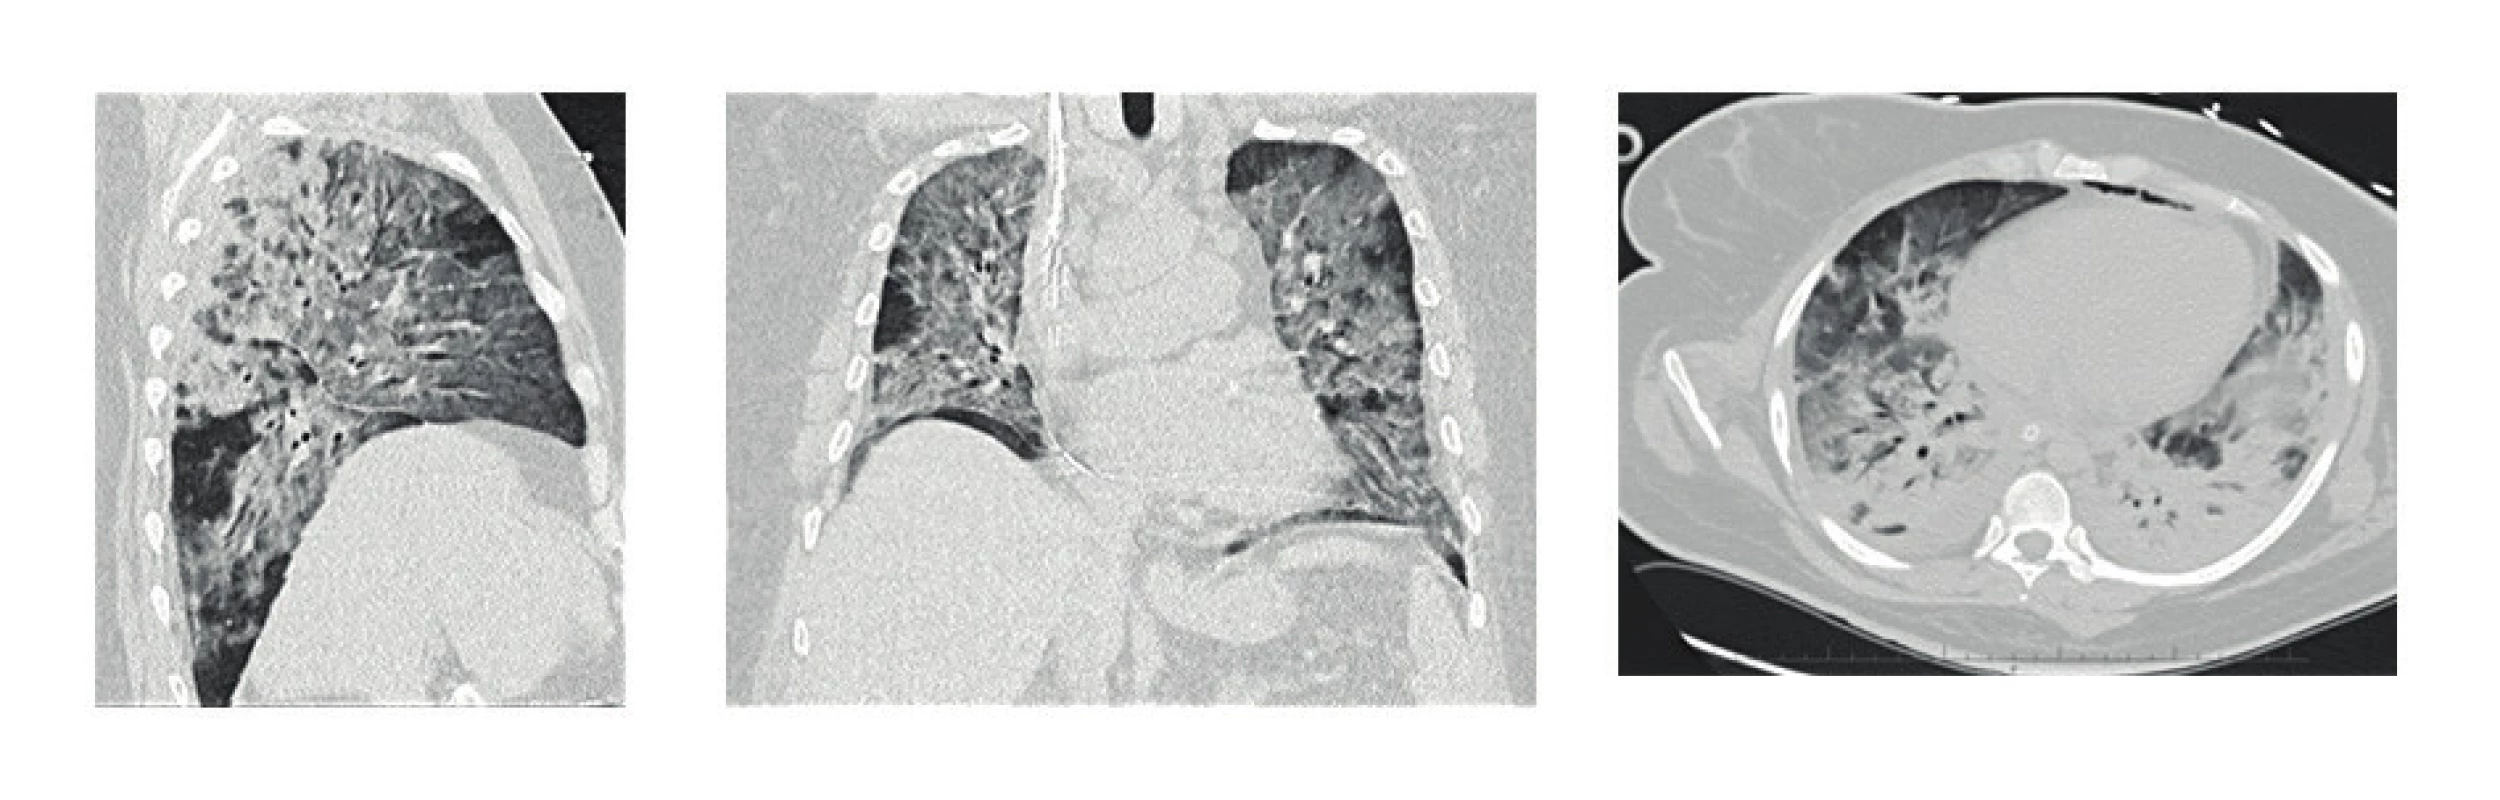 HRCT plic s nálezem ARDS (difuzní nehomogenní zastření plicního parenchymu), těžké bilaterální postižení při H1N1 intersticiální pneumonii